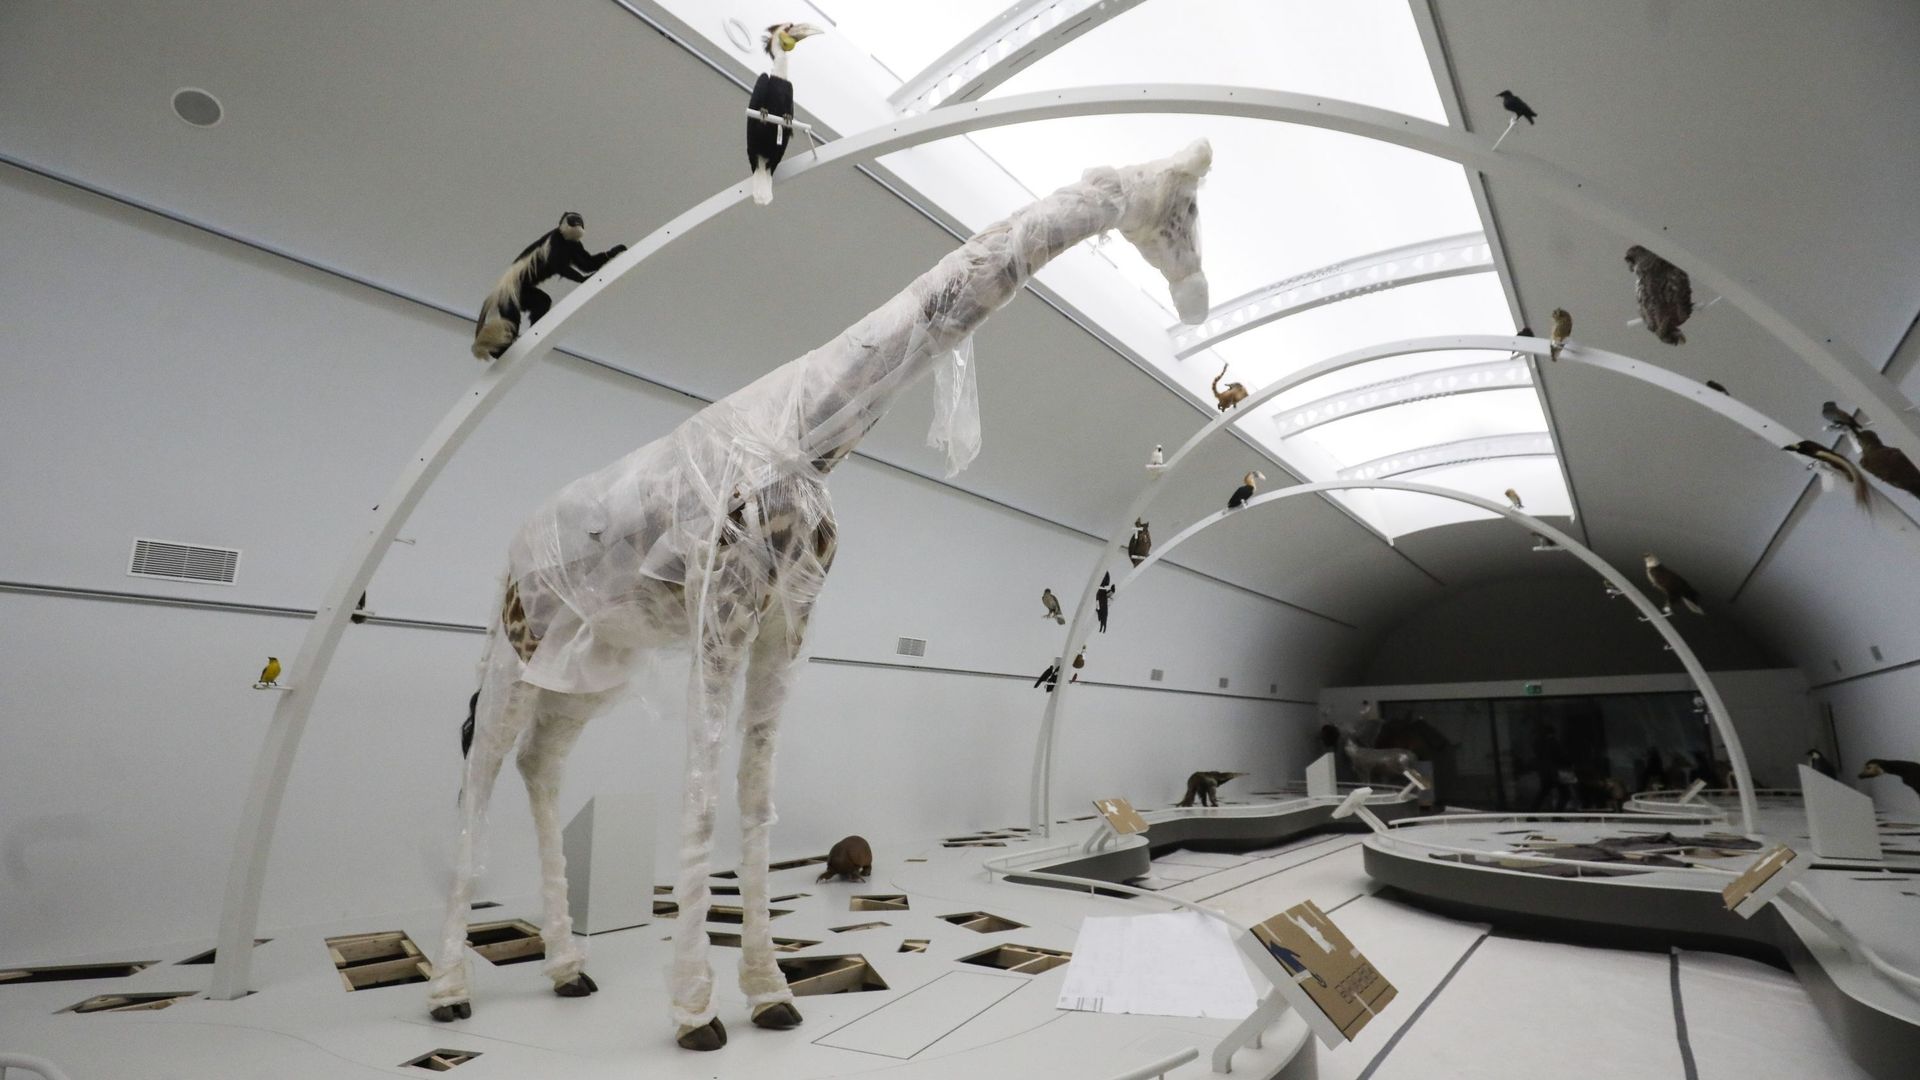 Bruxelles: ouverture de la galerie permanente "Planète vivante" au musée des Sciences naturelles